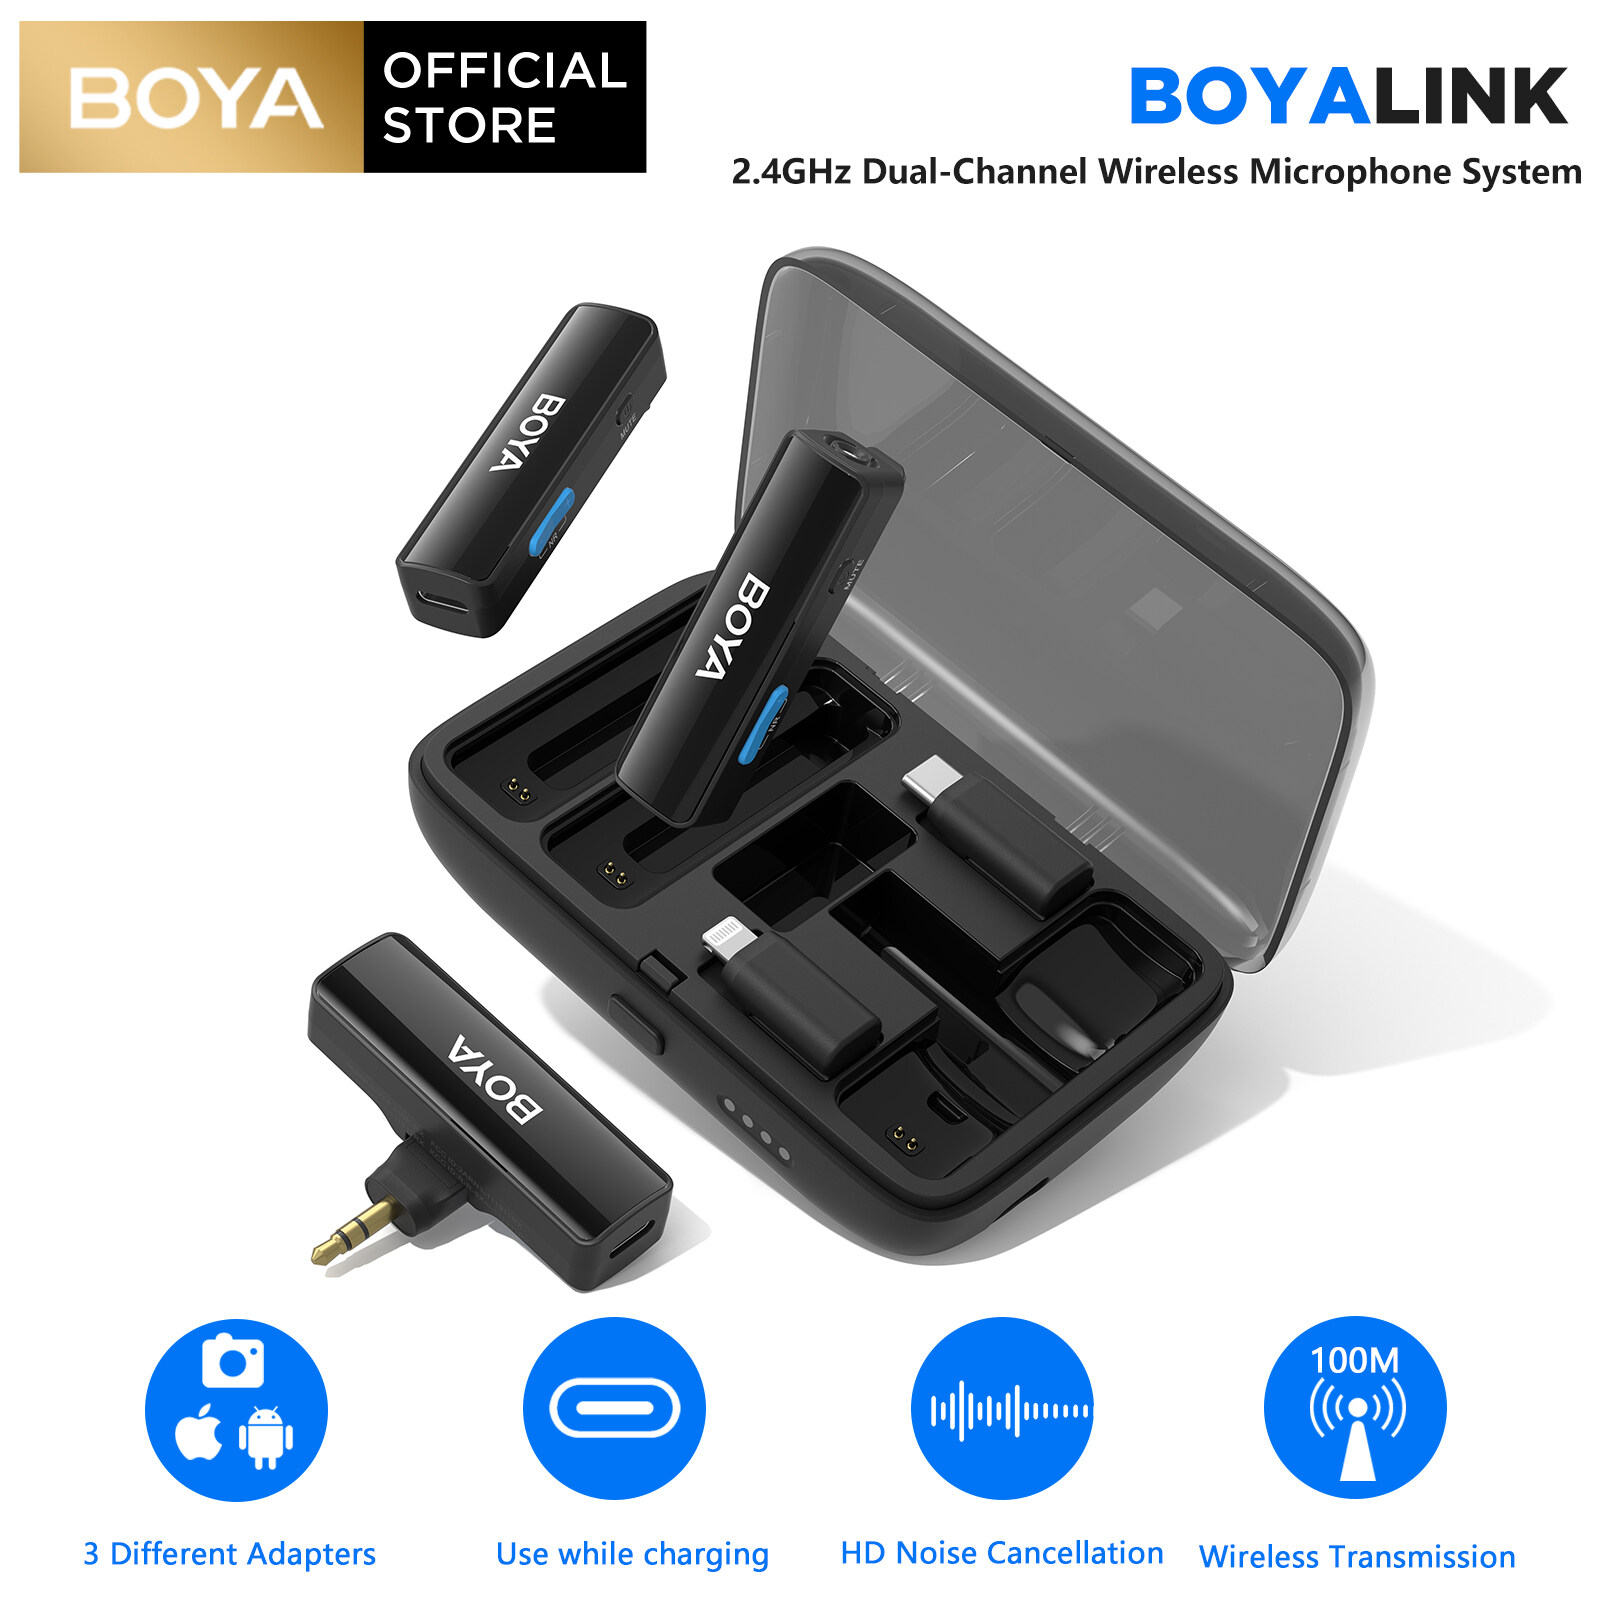 BOYA BOYALINK 2.4GHz Micro dây chuyền không dây kép cho Android iPhone